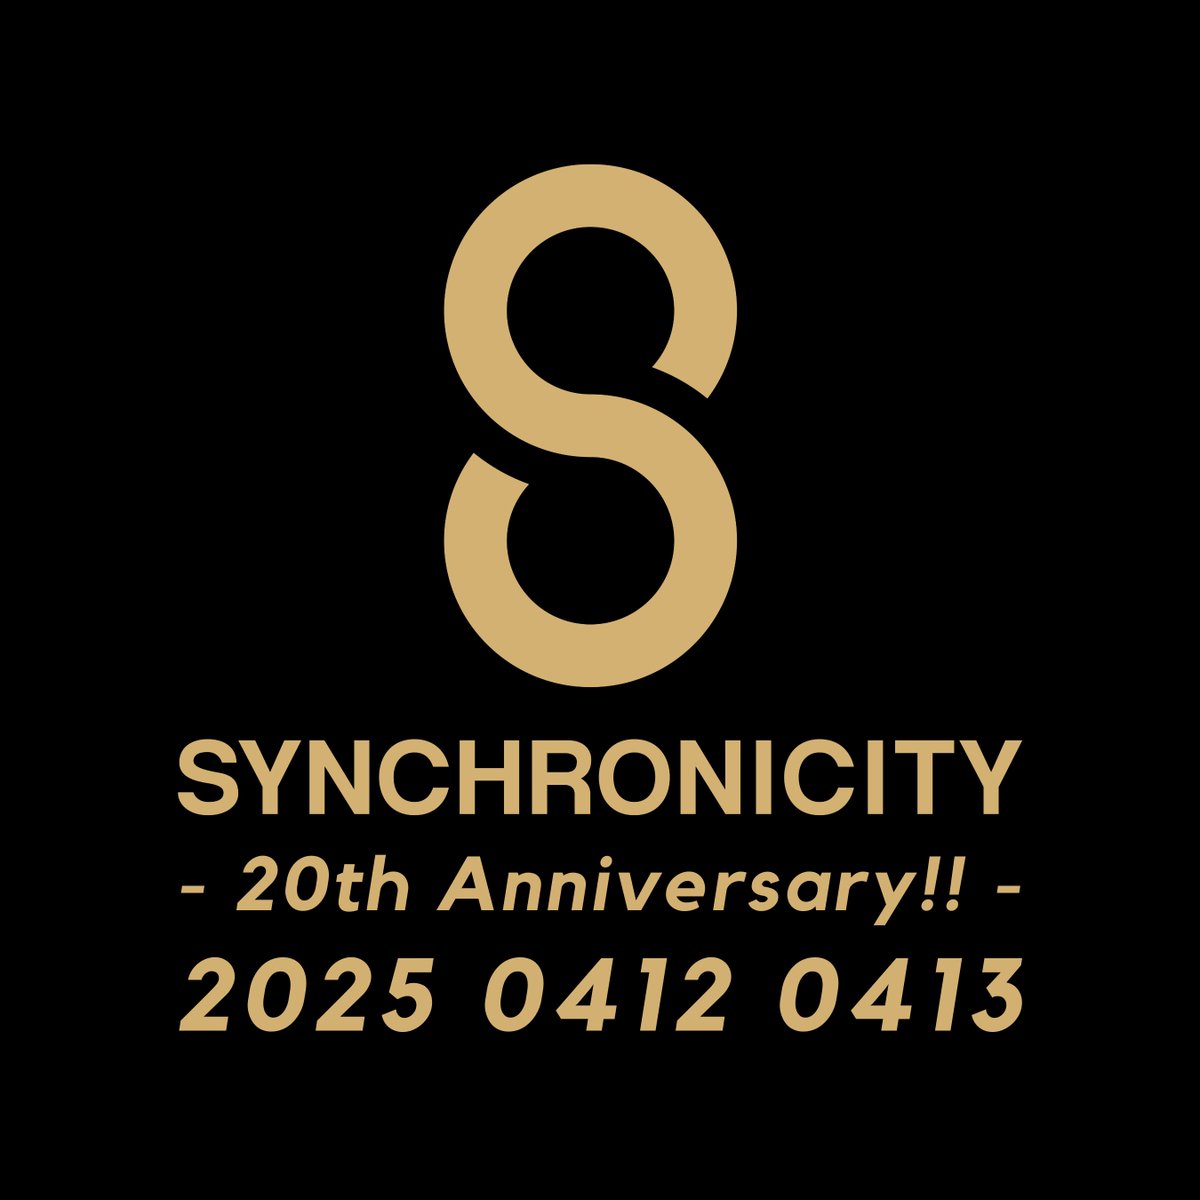 🔥『SYNCHRONICITY'25』開催決定🔥
来年は20周年❗改めて、2025年、4月12日(土)、4月13(日)開催のお知らせです‼️改善を重ねながら取り組んでいきます。新情報は公式アプリ、各SNS等で随時アナウンス⚡ここからまた新たなスタート‼️
synchronicity.tv/festival/news/…

#SYNCHRONICITY24 #SYNCHRONICITY25